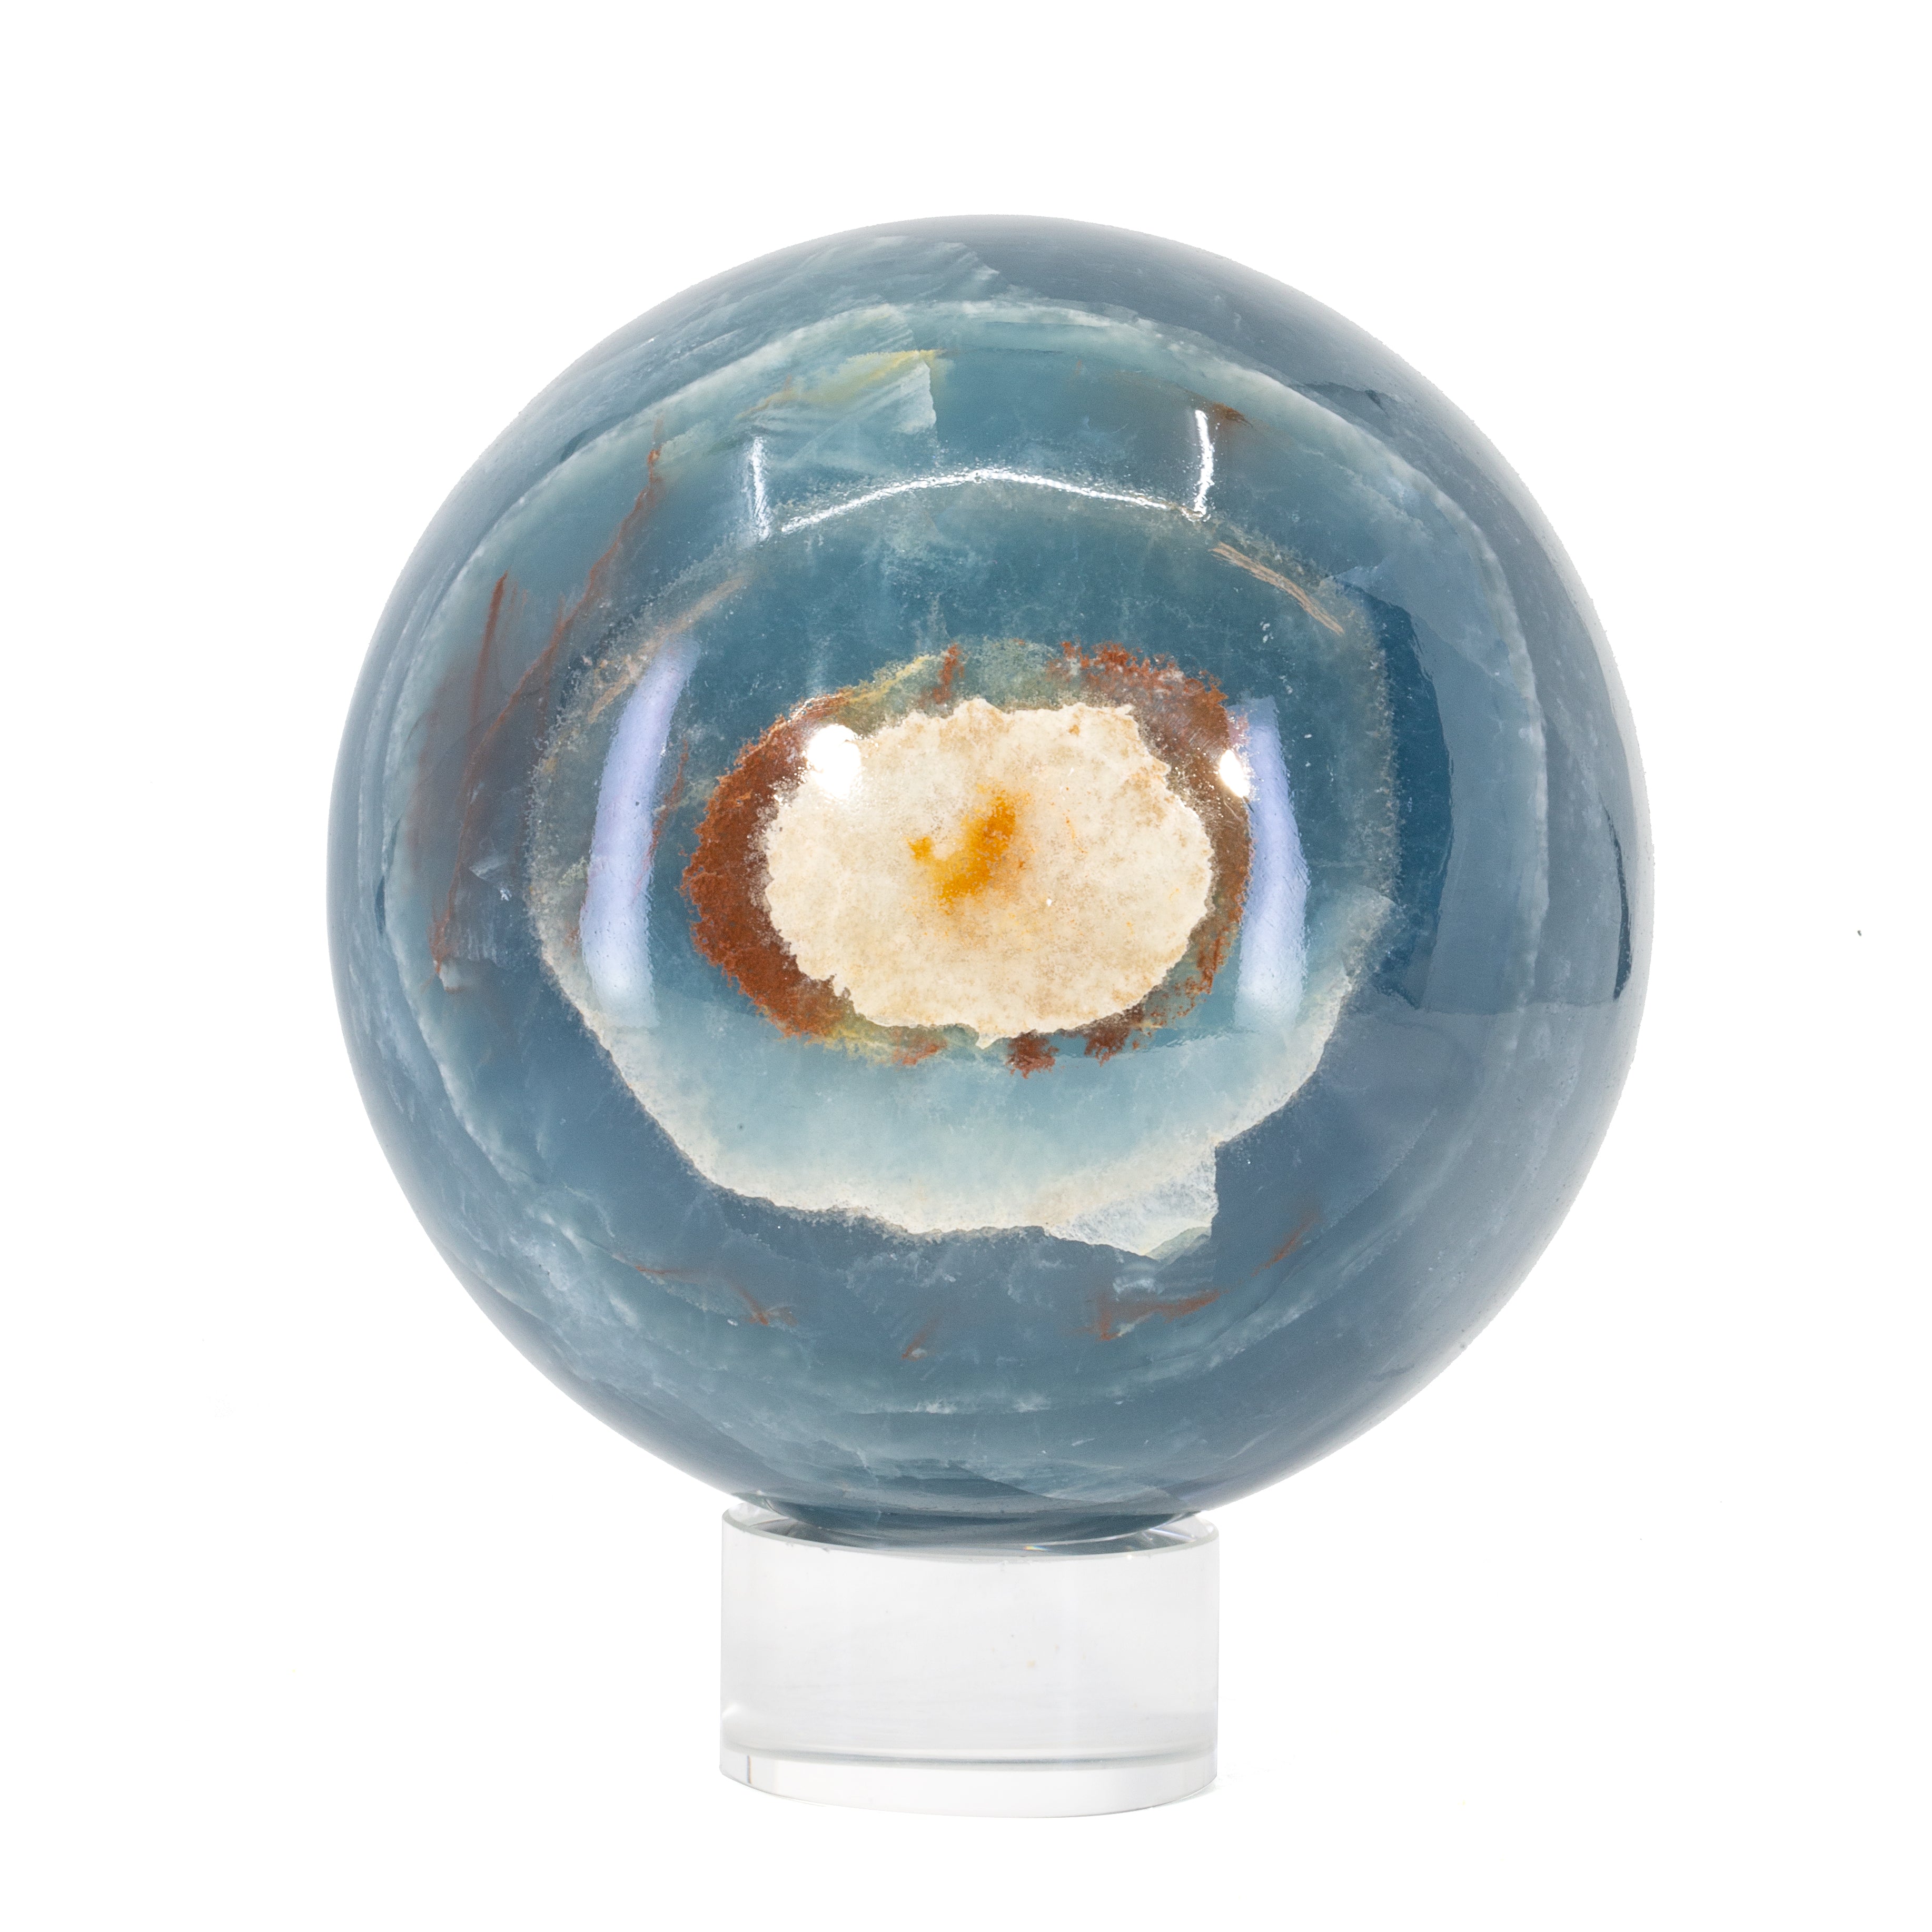 Blue Onyx 3.2lb 3.9 inch Polished Crystal Sphere - Argentina - JJL-048 - Crystalarium